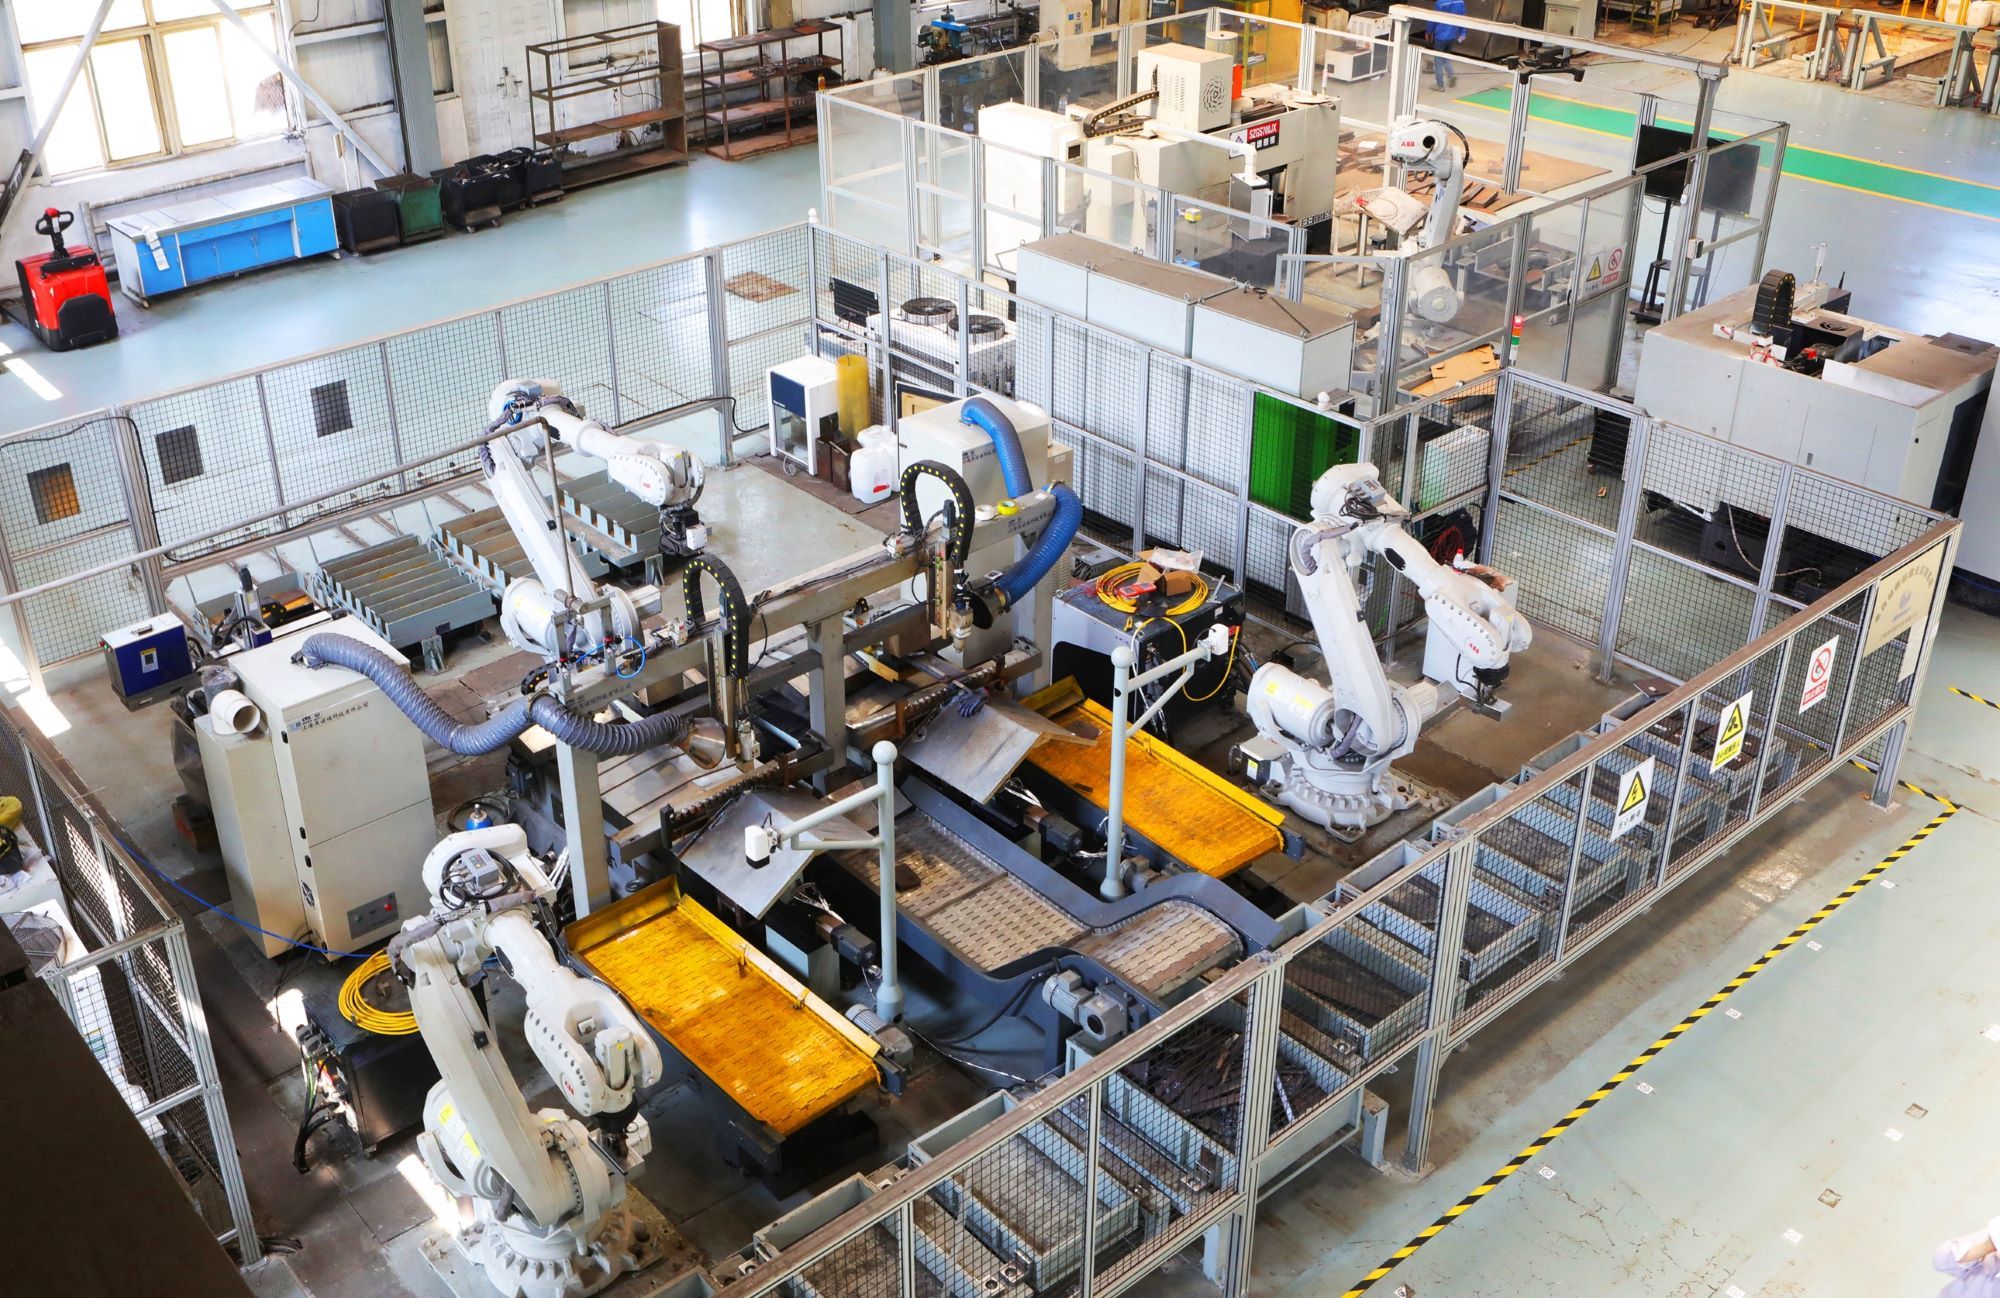 鞍钢股份公司鲅鱼圈钢铁分公司的激光智能锯切机器人。